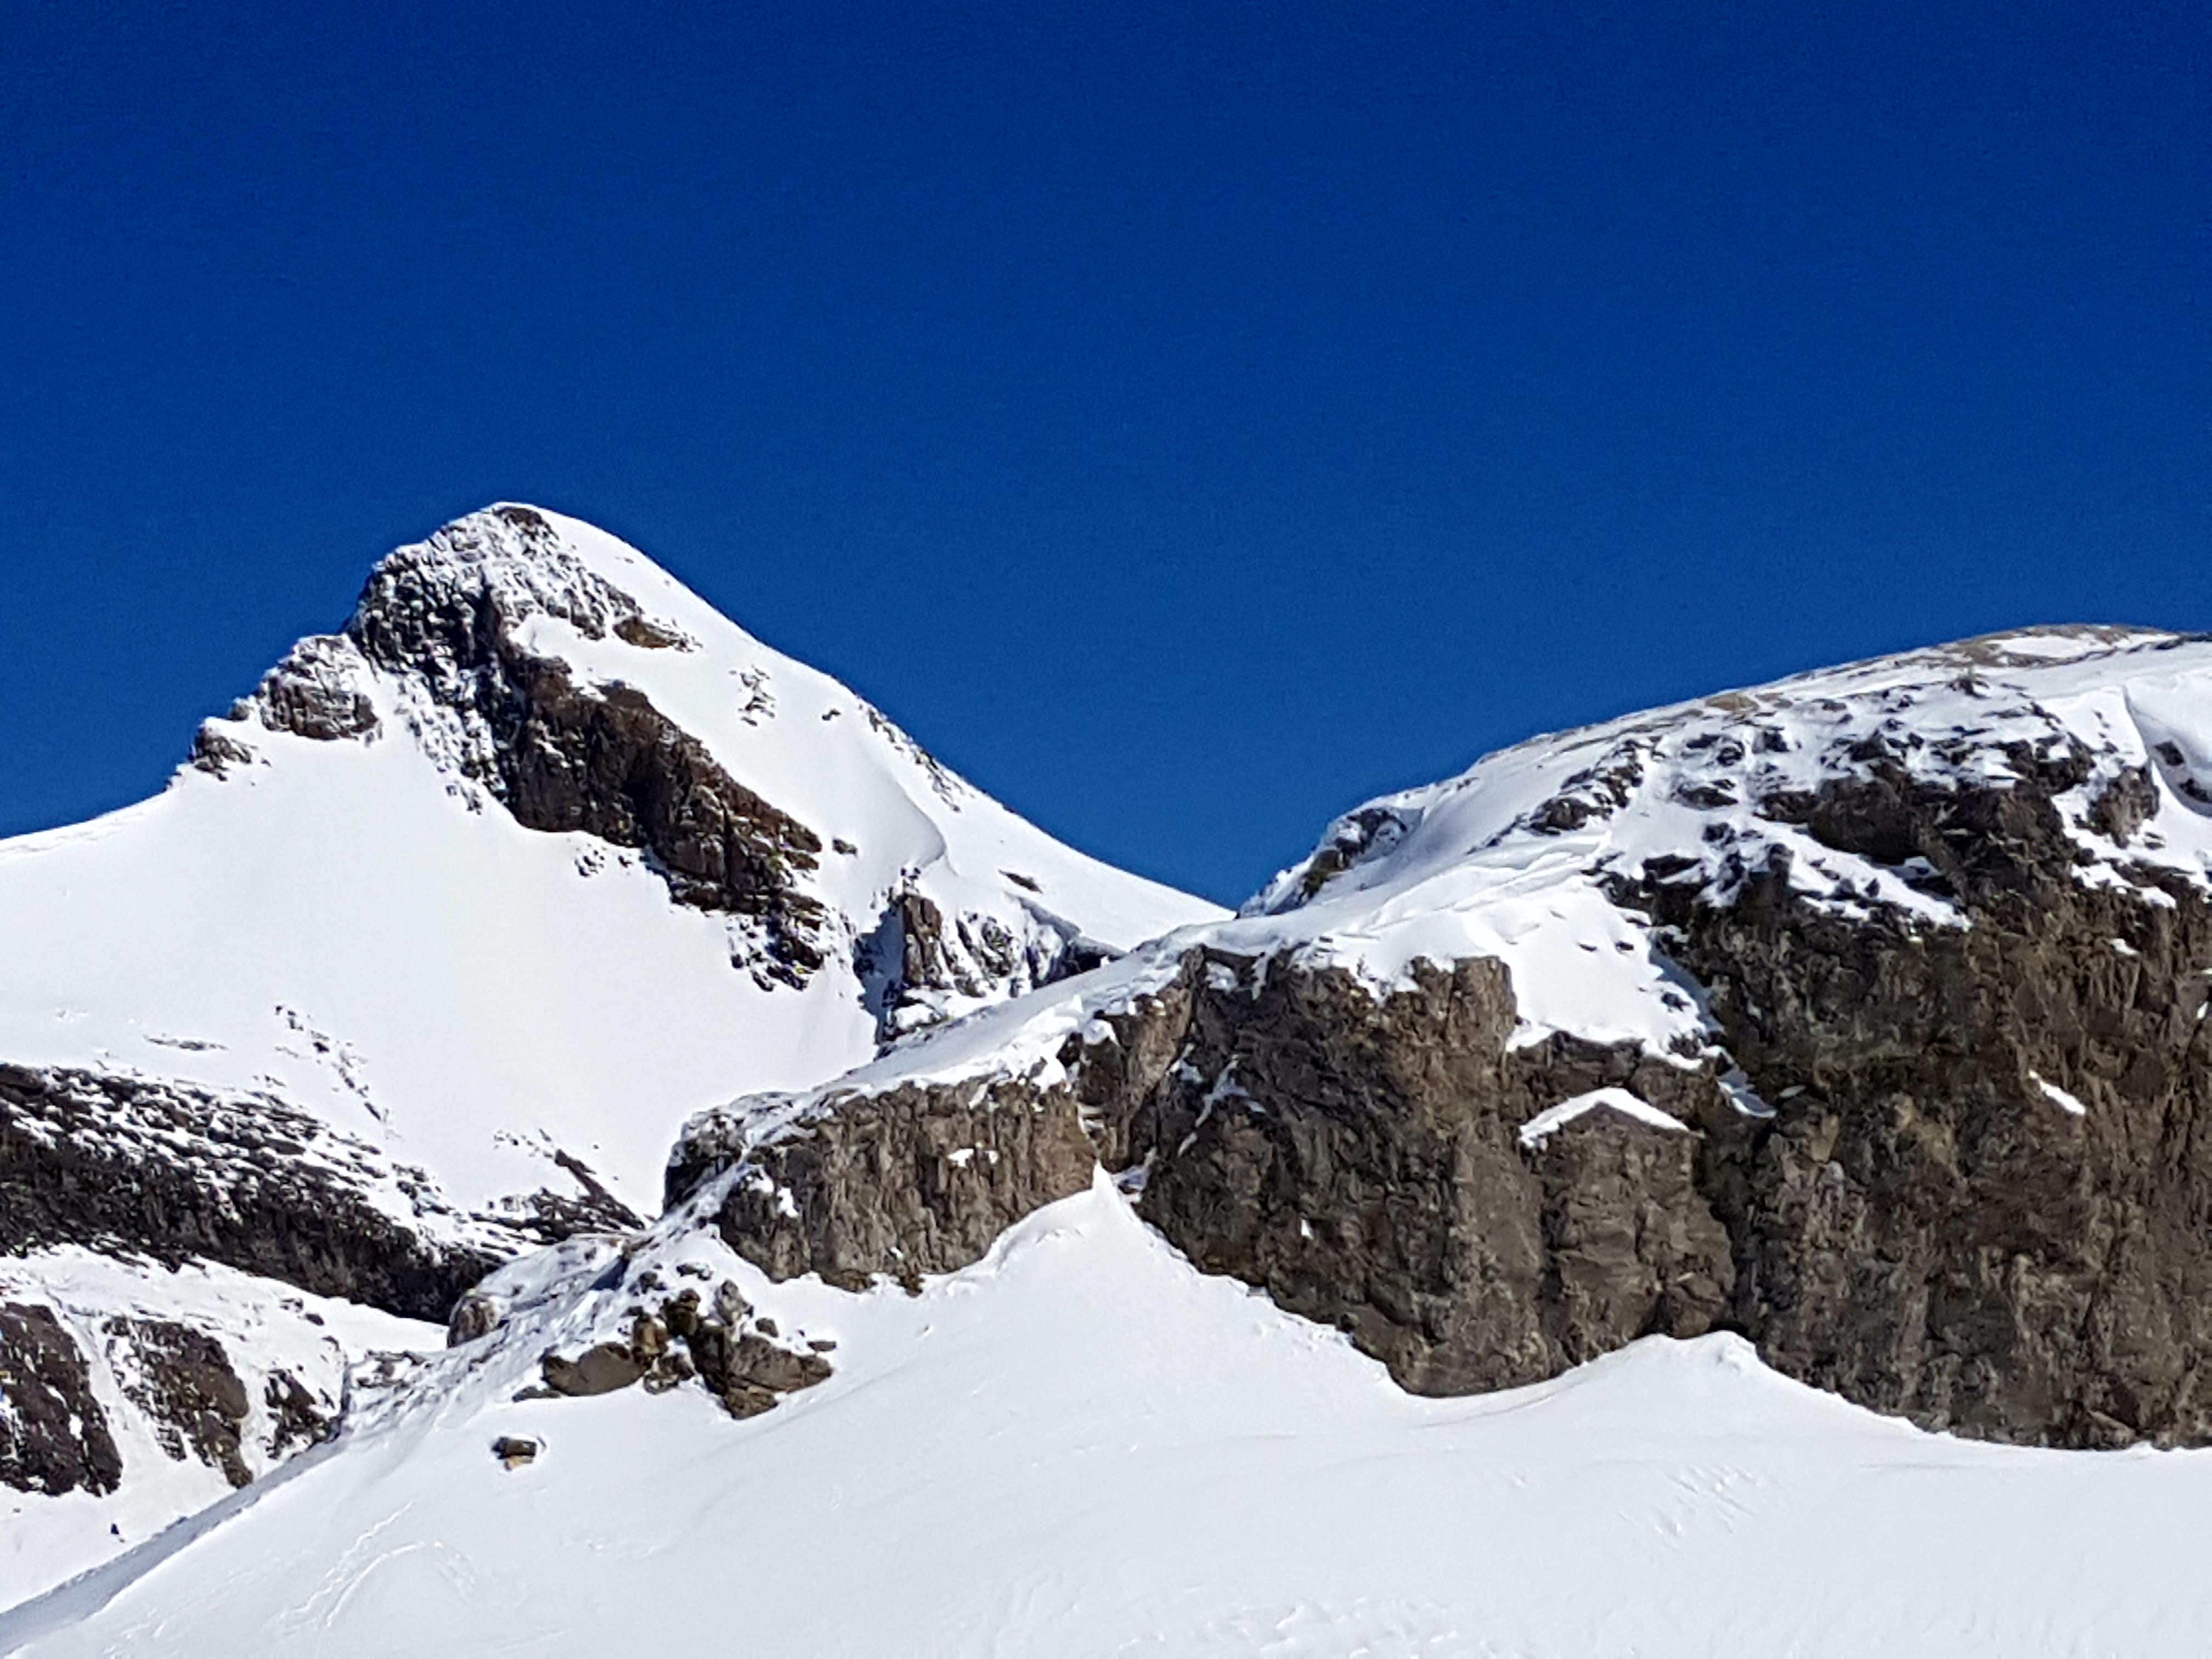 Oldenhorn, Gstaad Glacier 3000